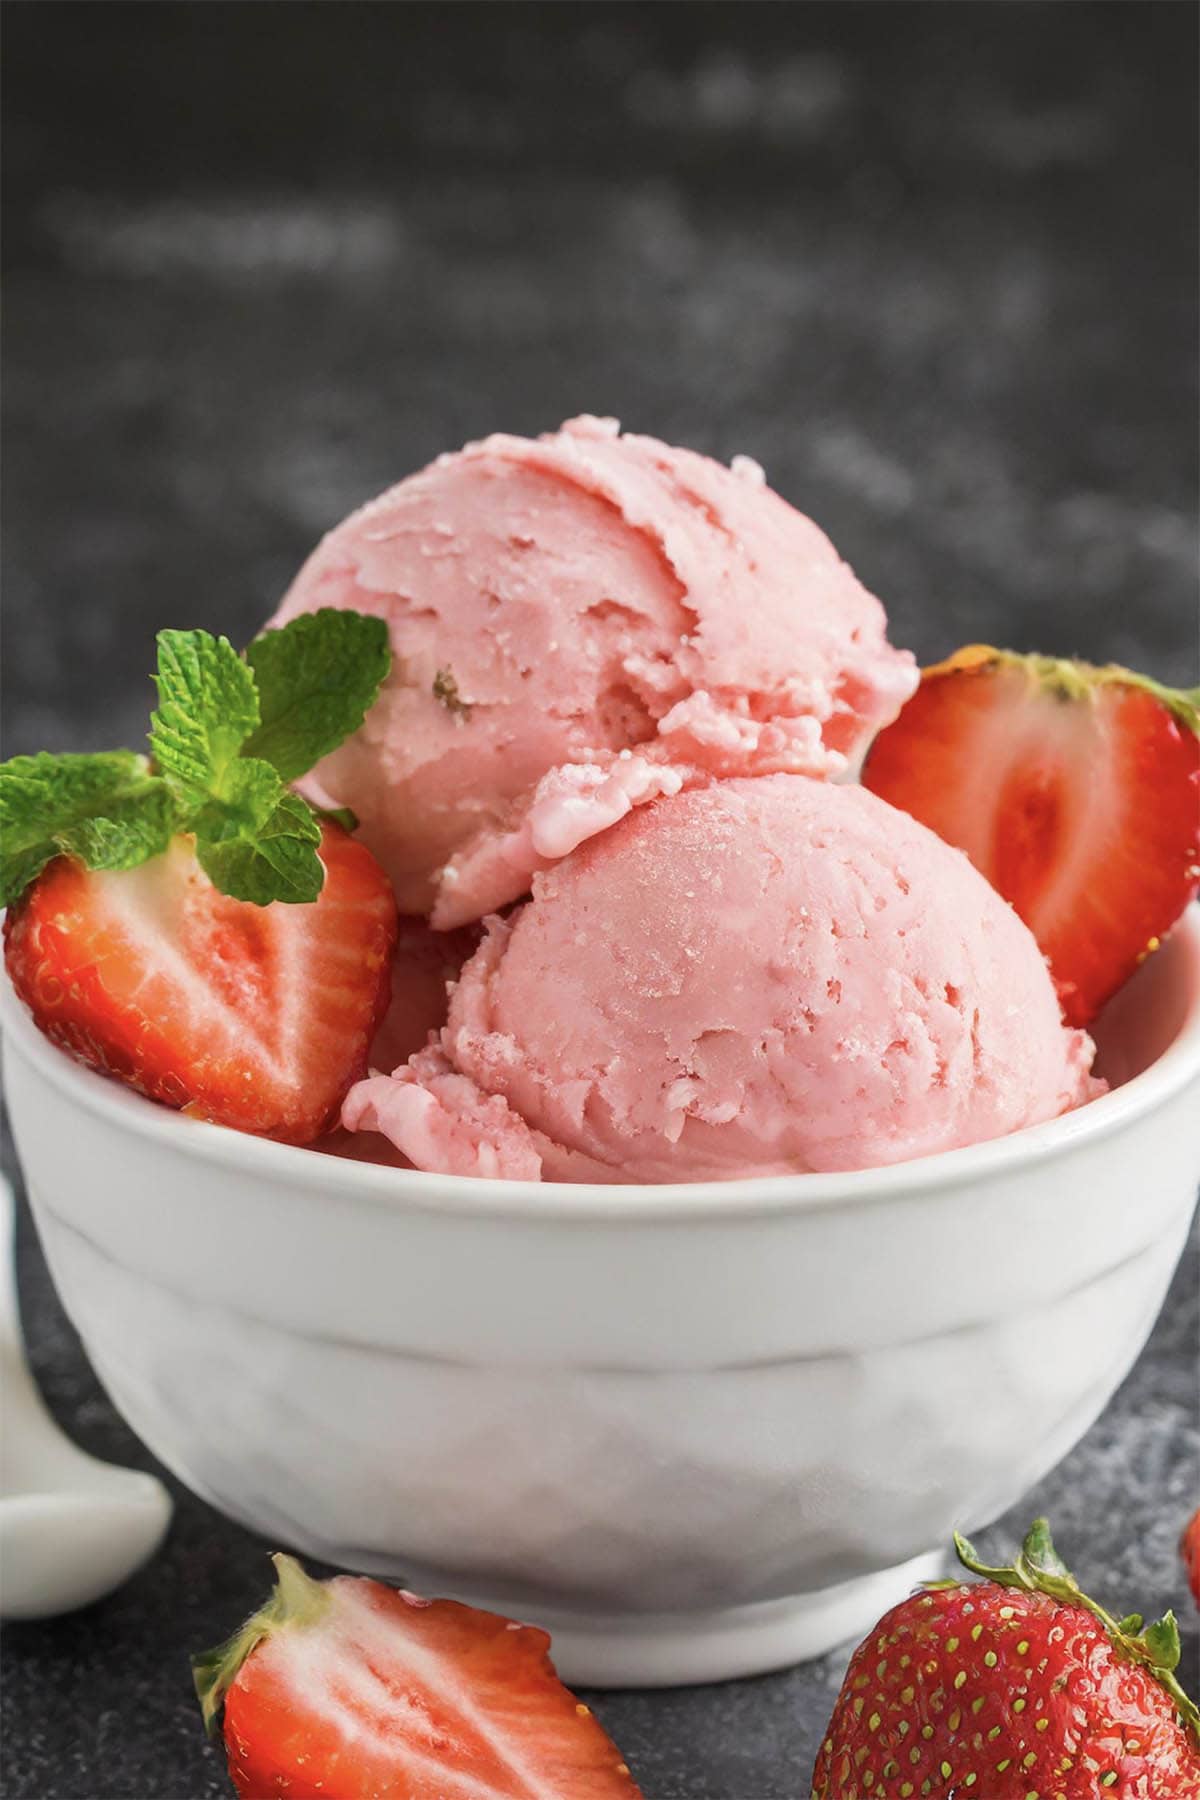 strawberry ice cream.